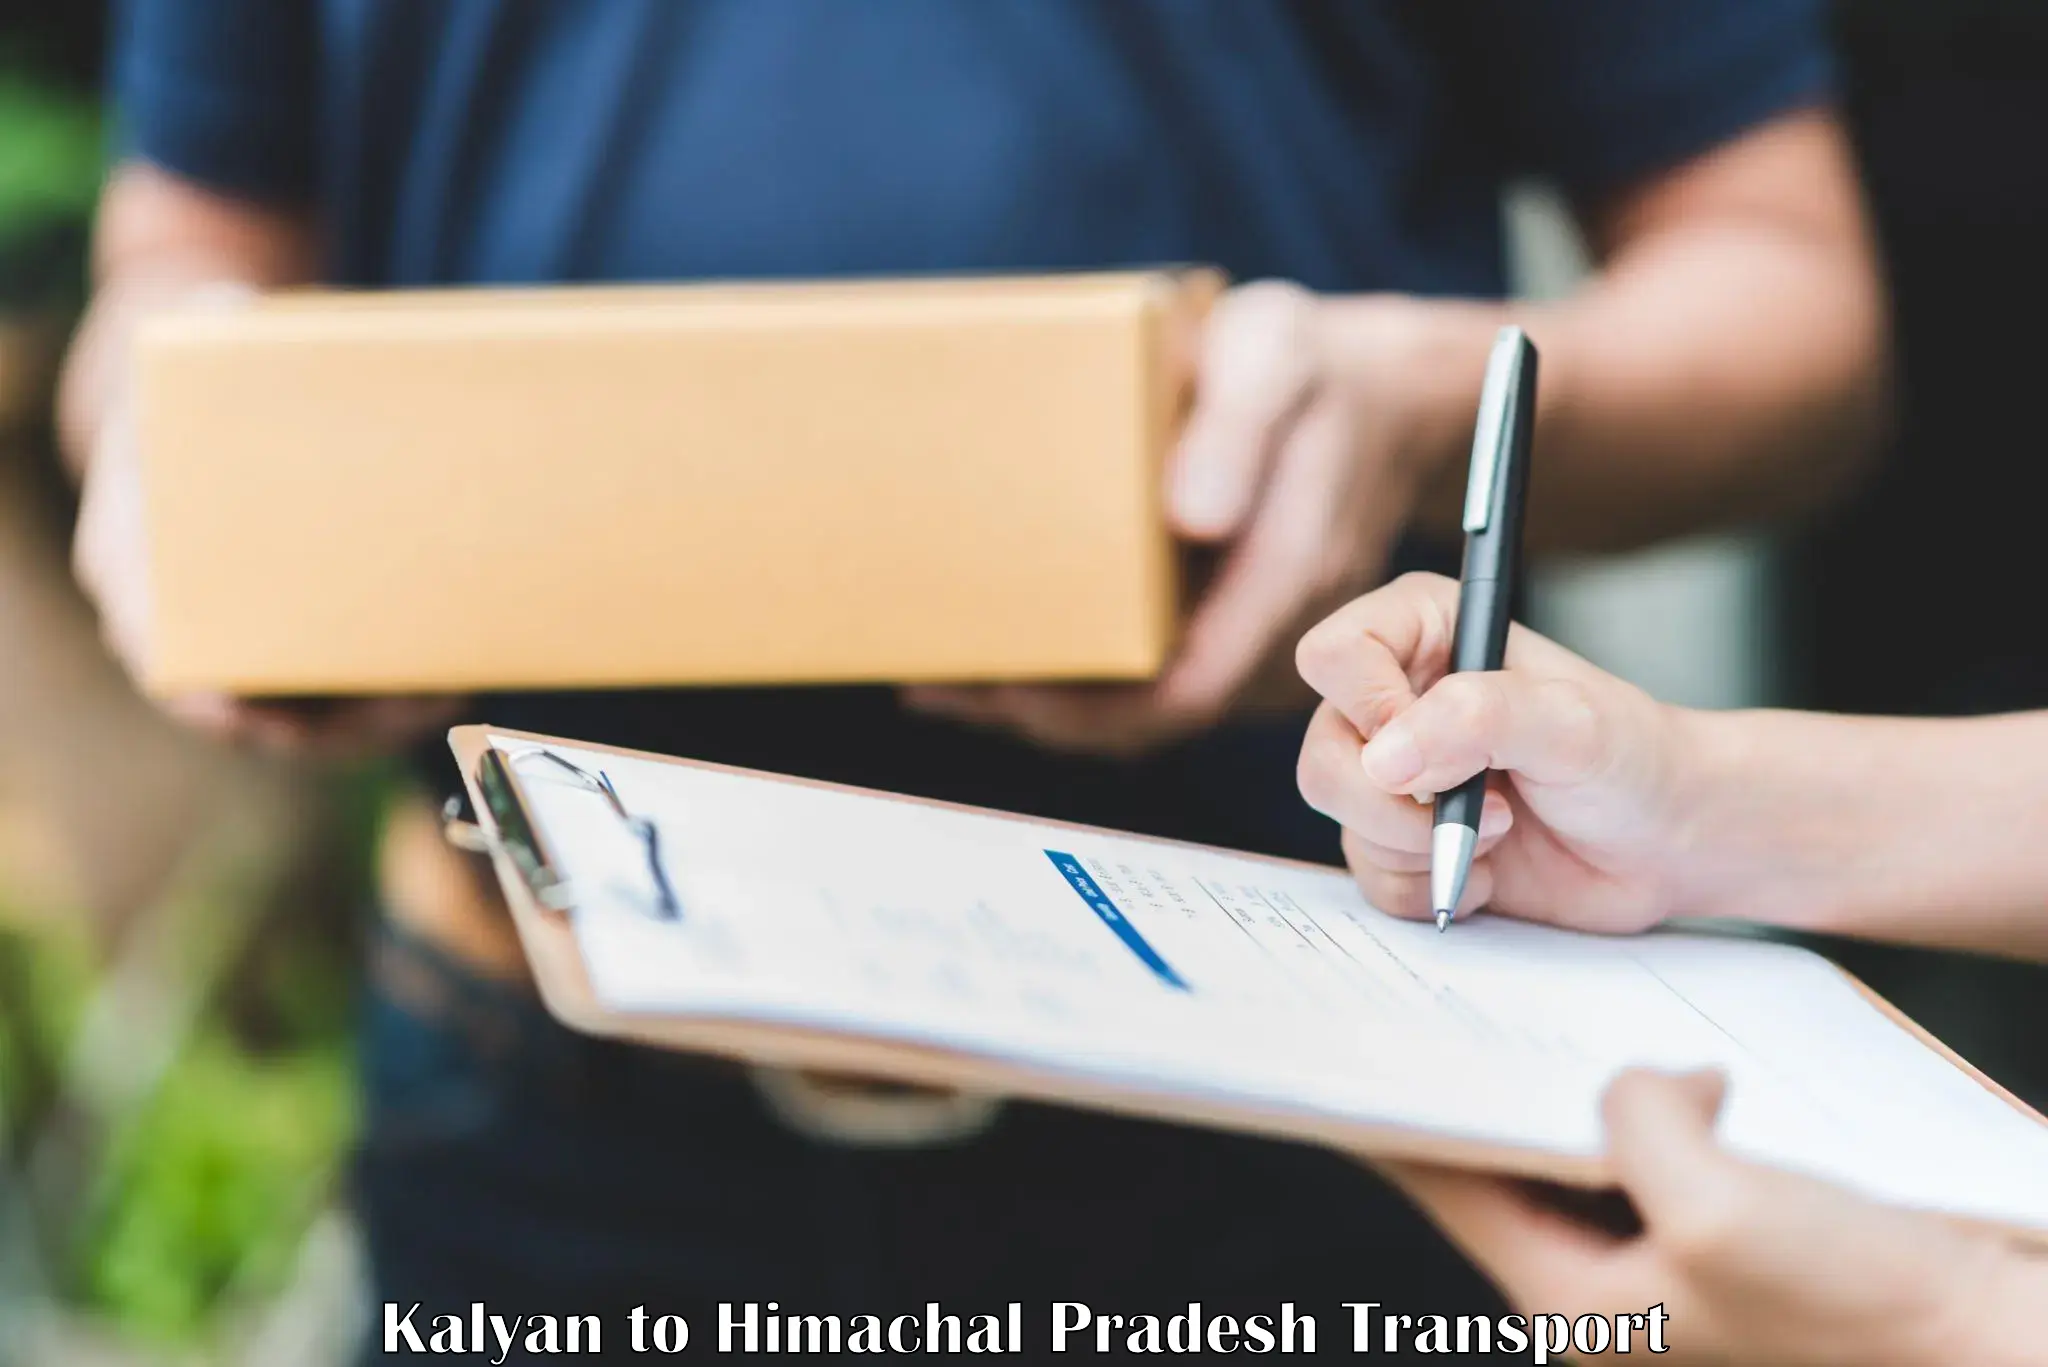 Nearby transport service Kalyan to Nirmand